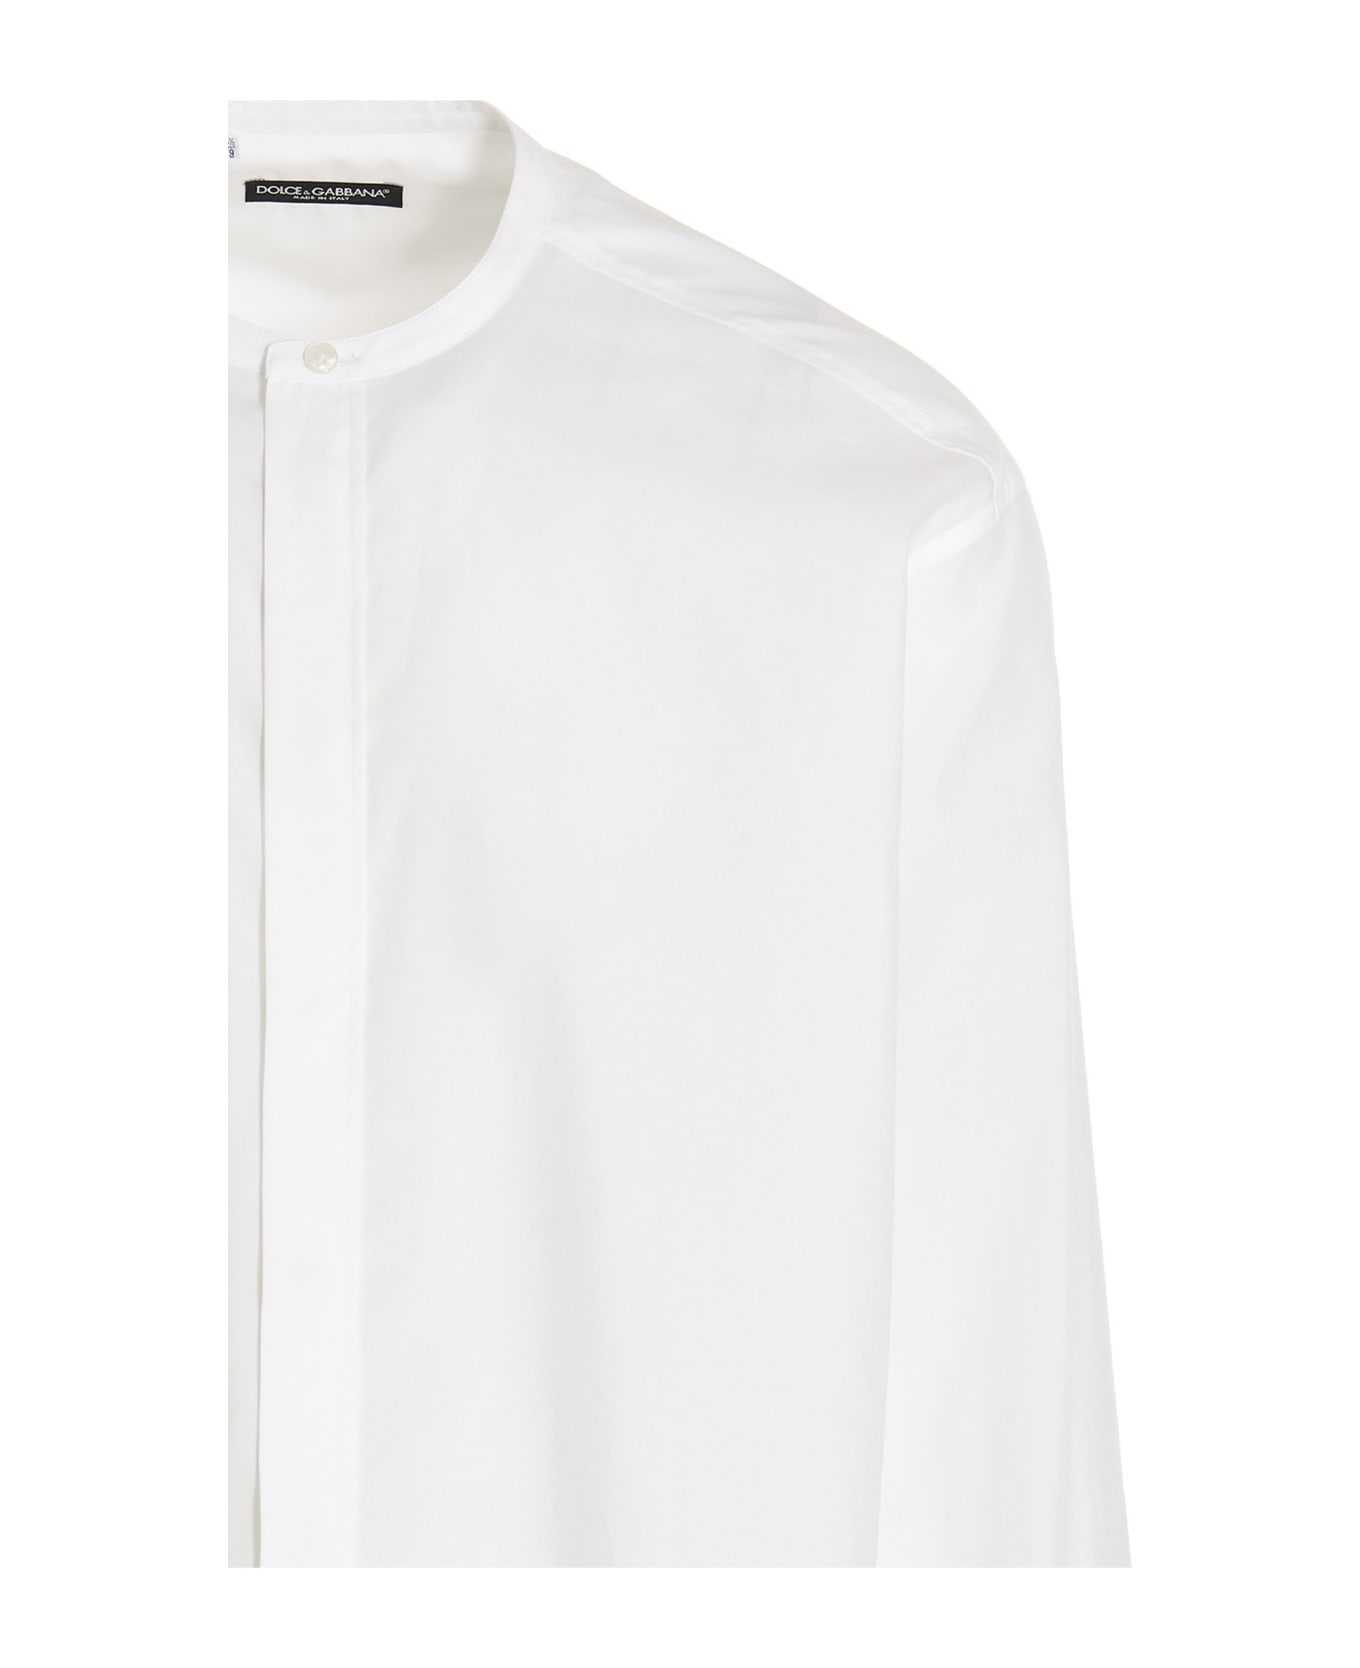 Dolce & Gabbana Band Collar Plain Long Shirt - White